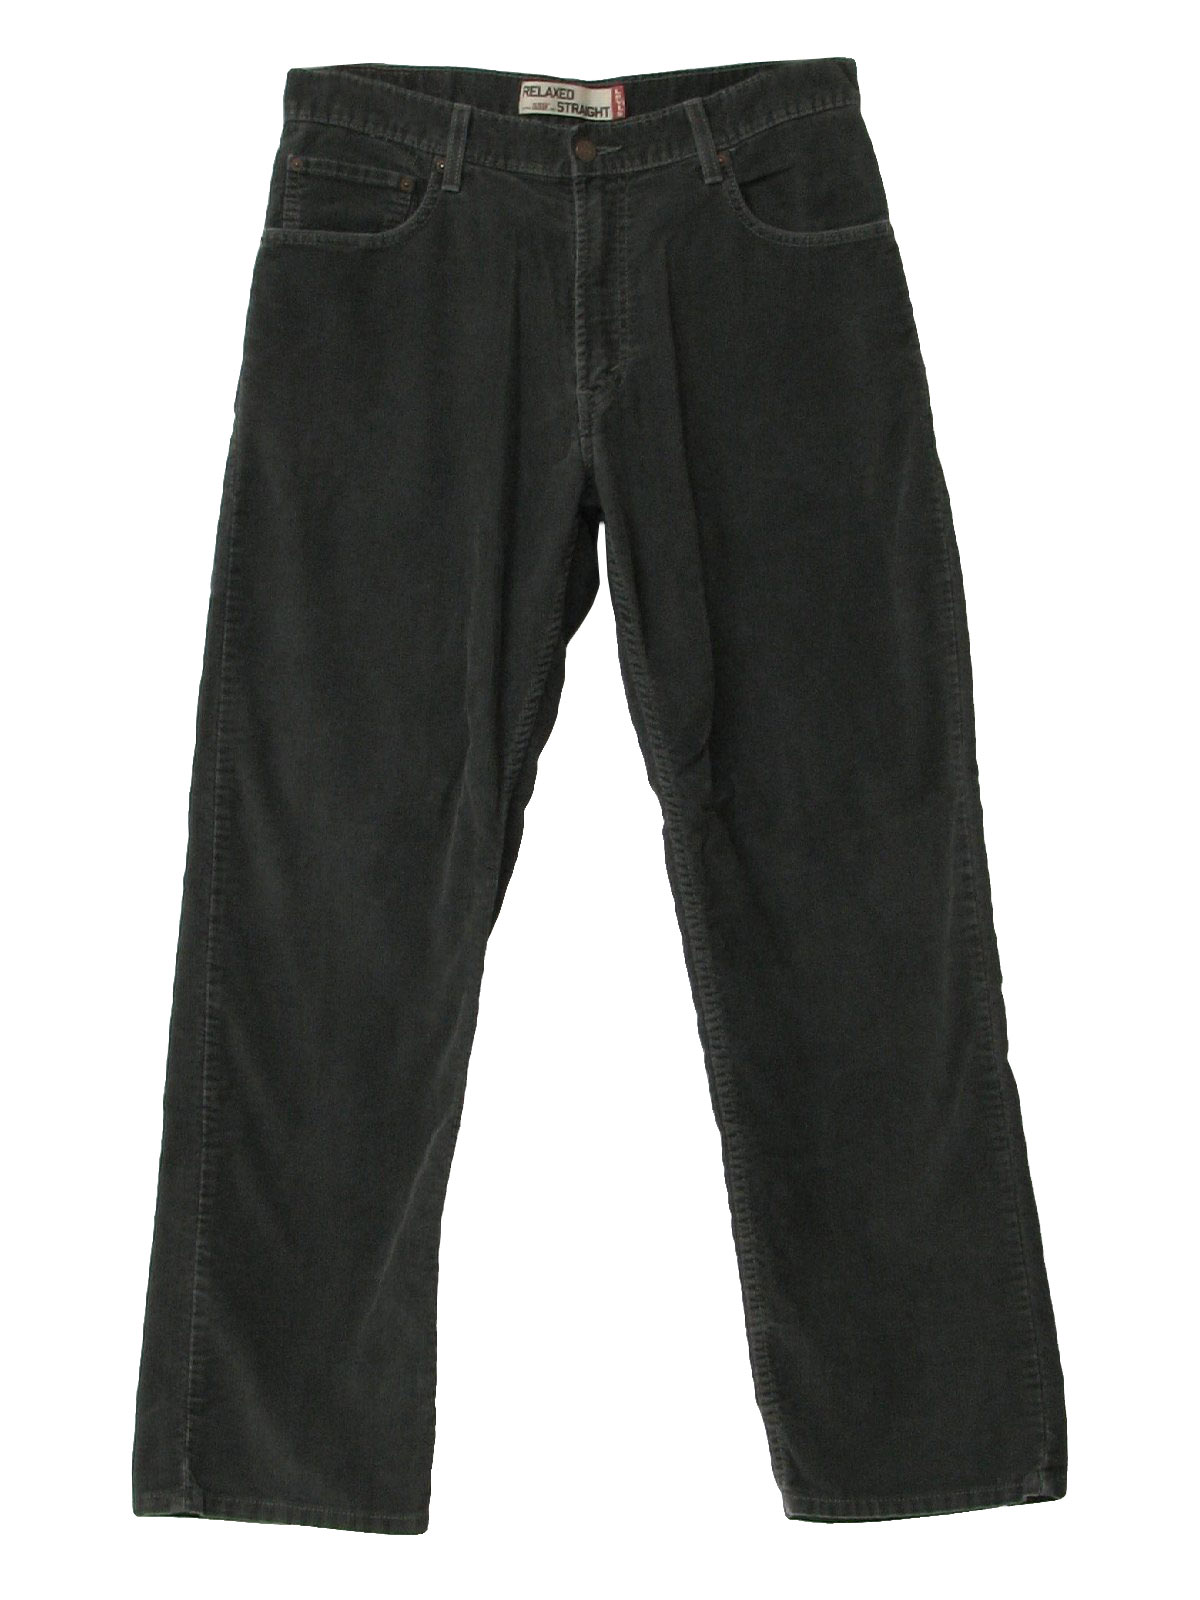 90s Pants (Levis 559): 90s -Levis 559- Mens grey cotton polyester ...